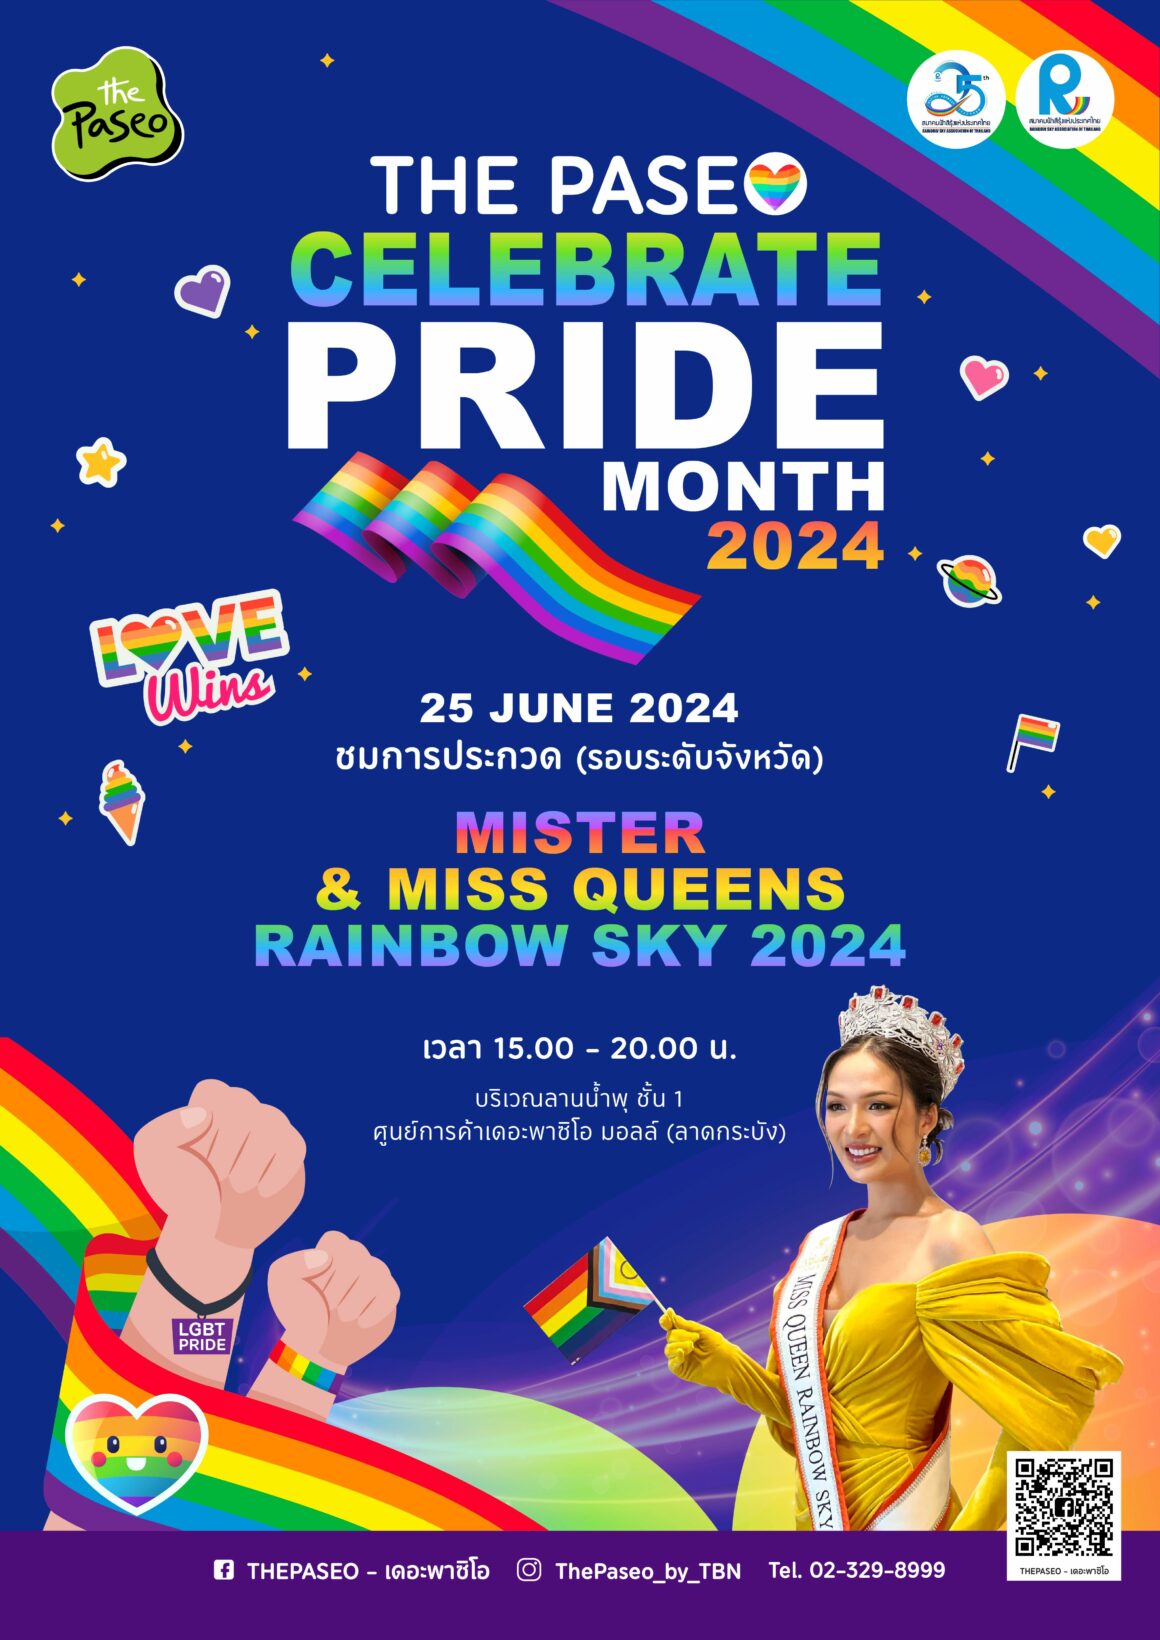 🏳️‍🌈 Celebrate Pride Month “LOVE WINS” June 2024